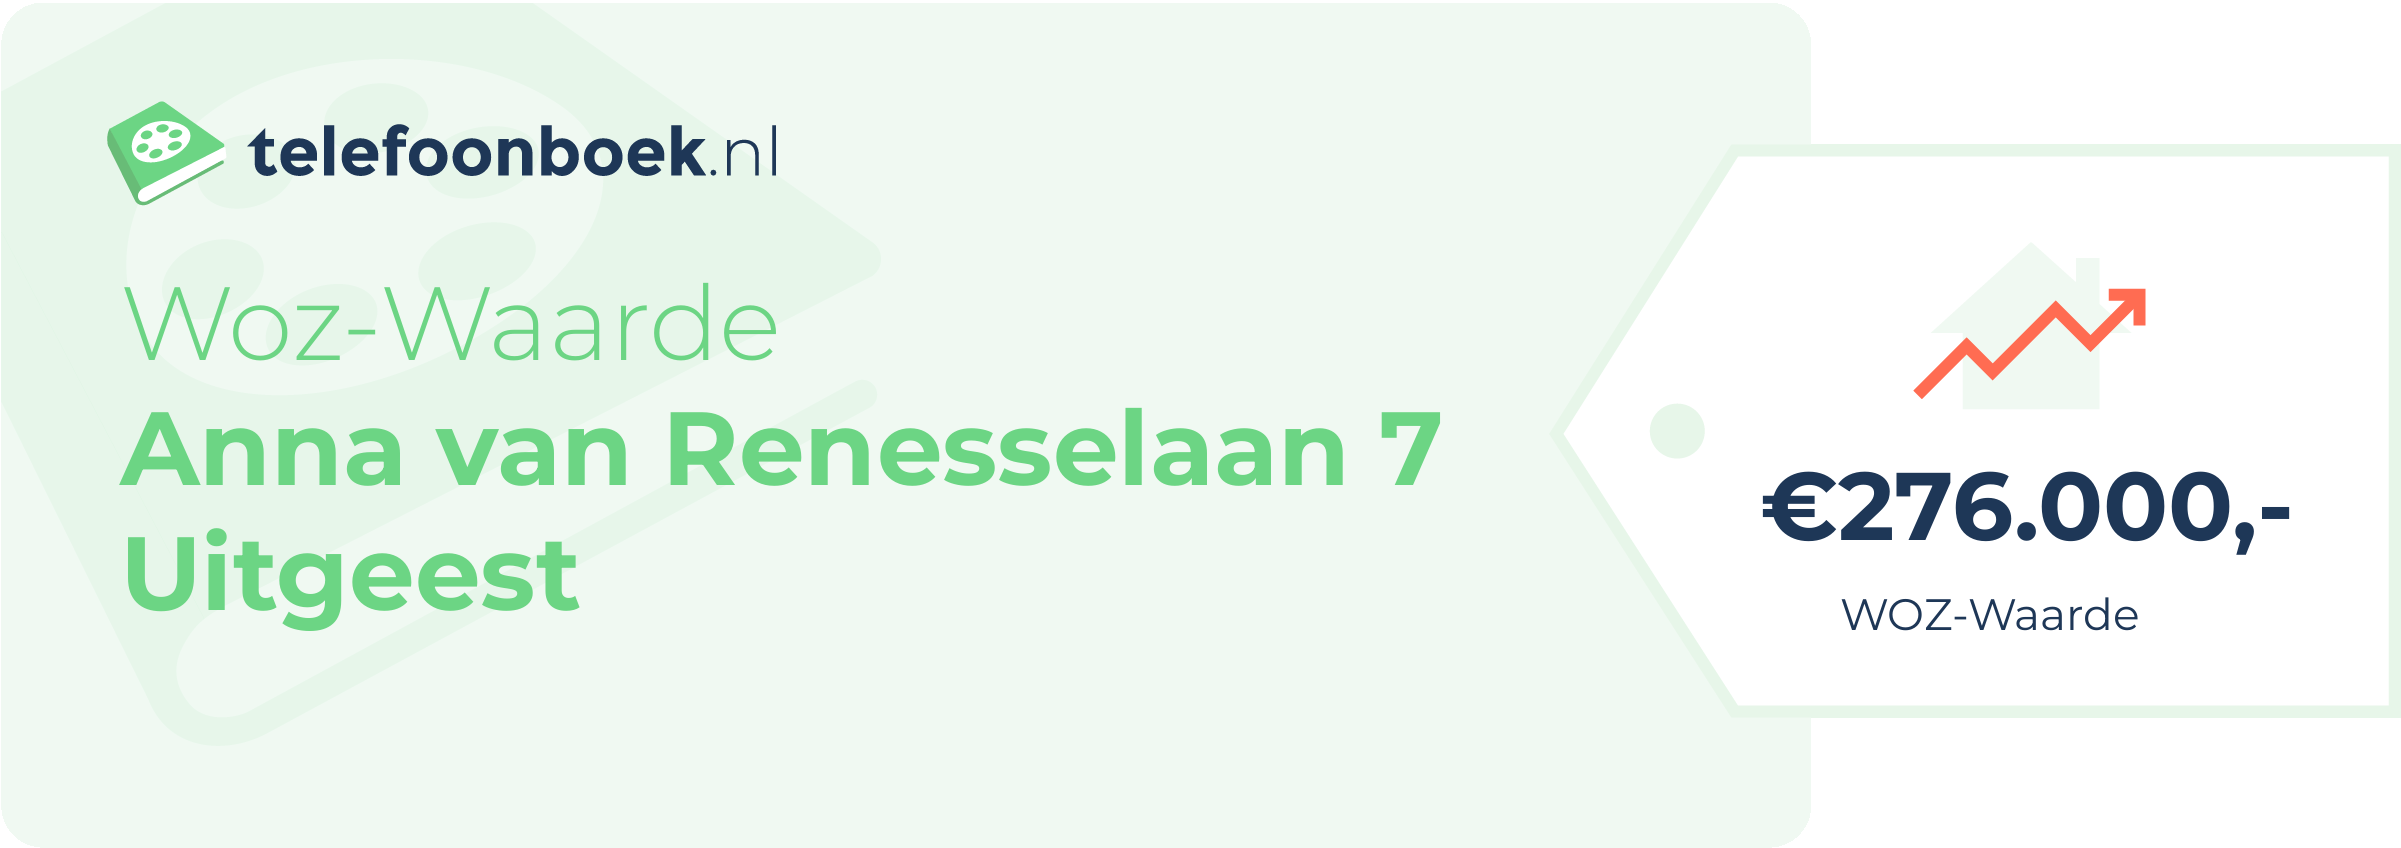 WOZ-waarde Anna Van Renesselaan 7 Uitgeest